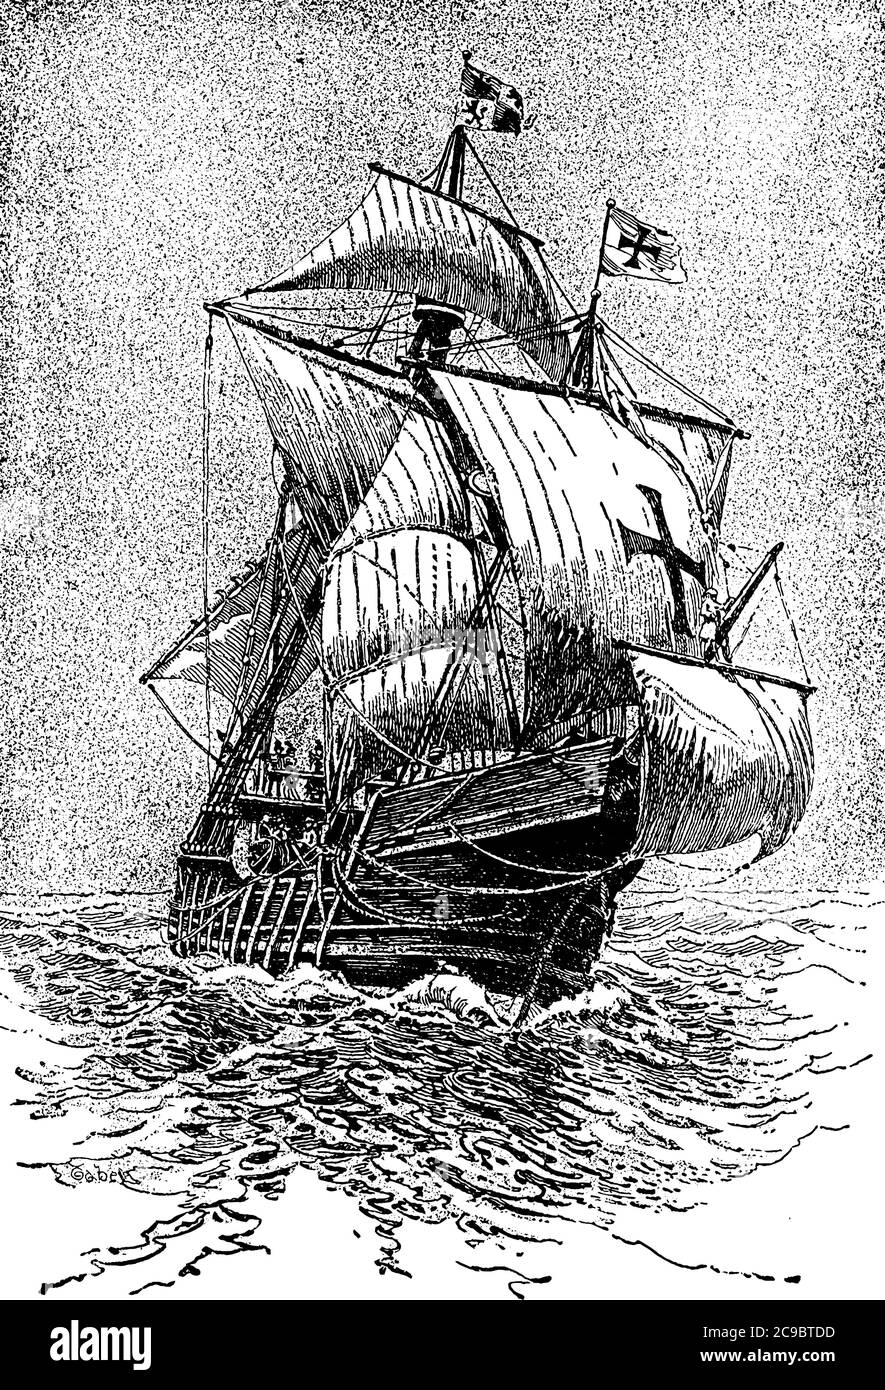 Eine typische Darstellung der Santa Maria, einem Schiff, das mit Columbus nach Amerika kam, Vintage-Linienzeichnung oder Gravurillustration. Stock Vektor